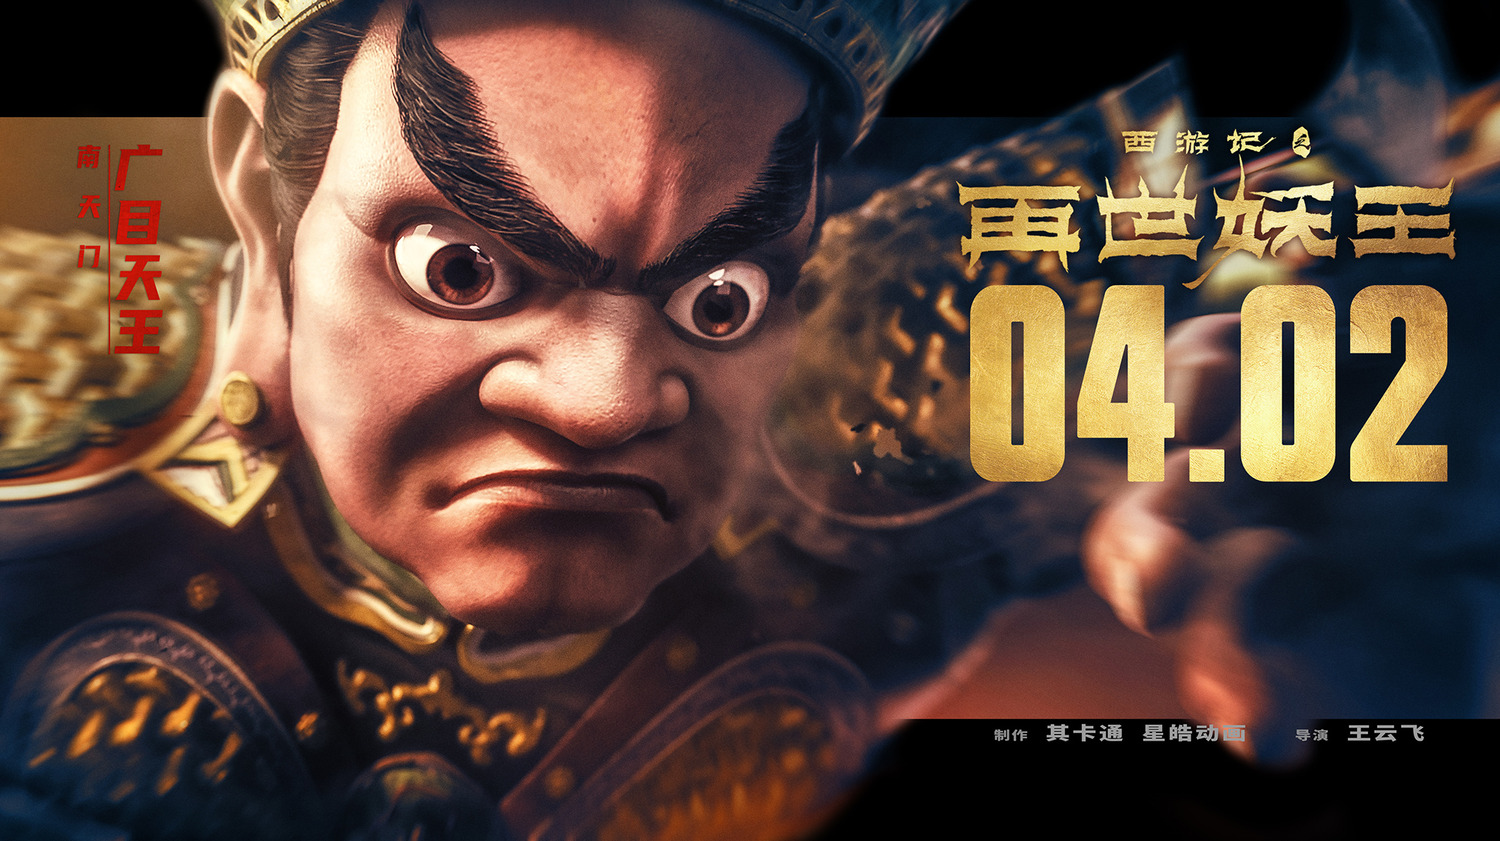 Extra Large Movie Poster Image for Xi You Ji Zhi Zai Shi Yao Wang (#20 of 21)